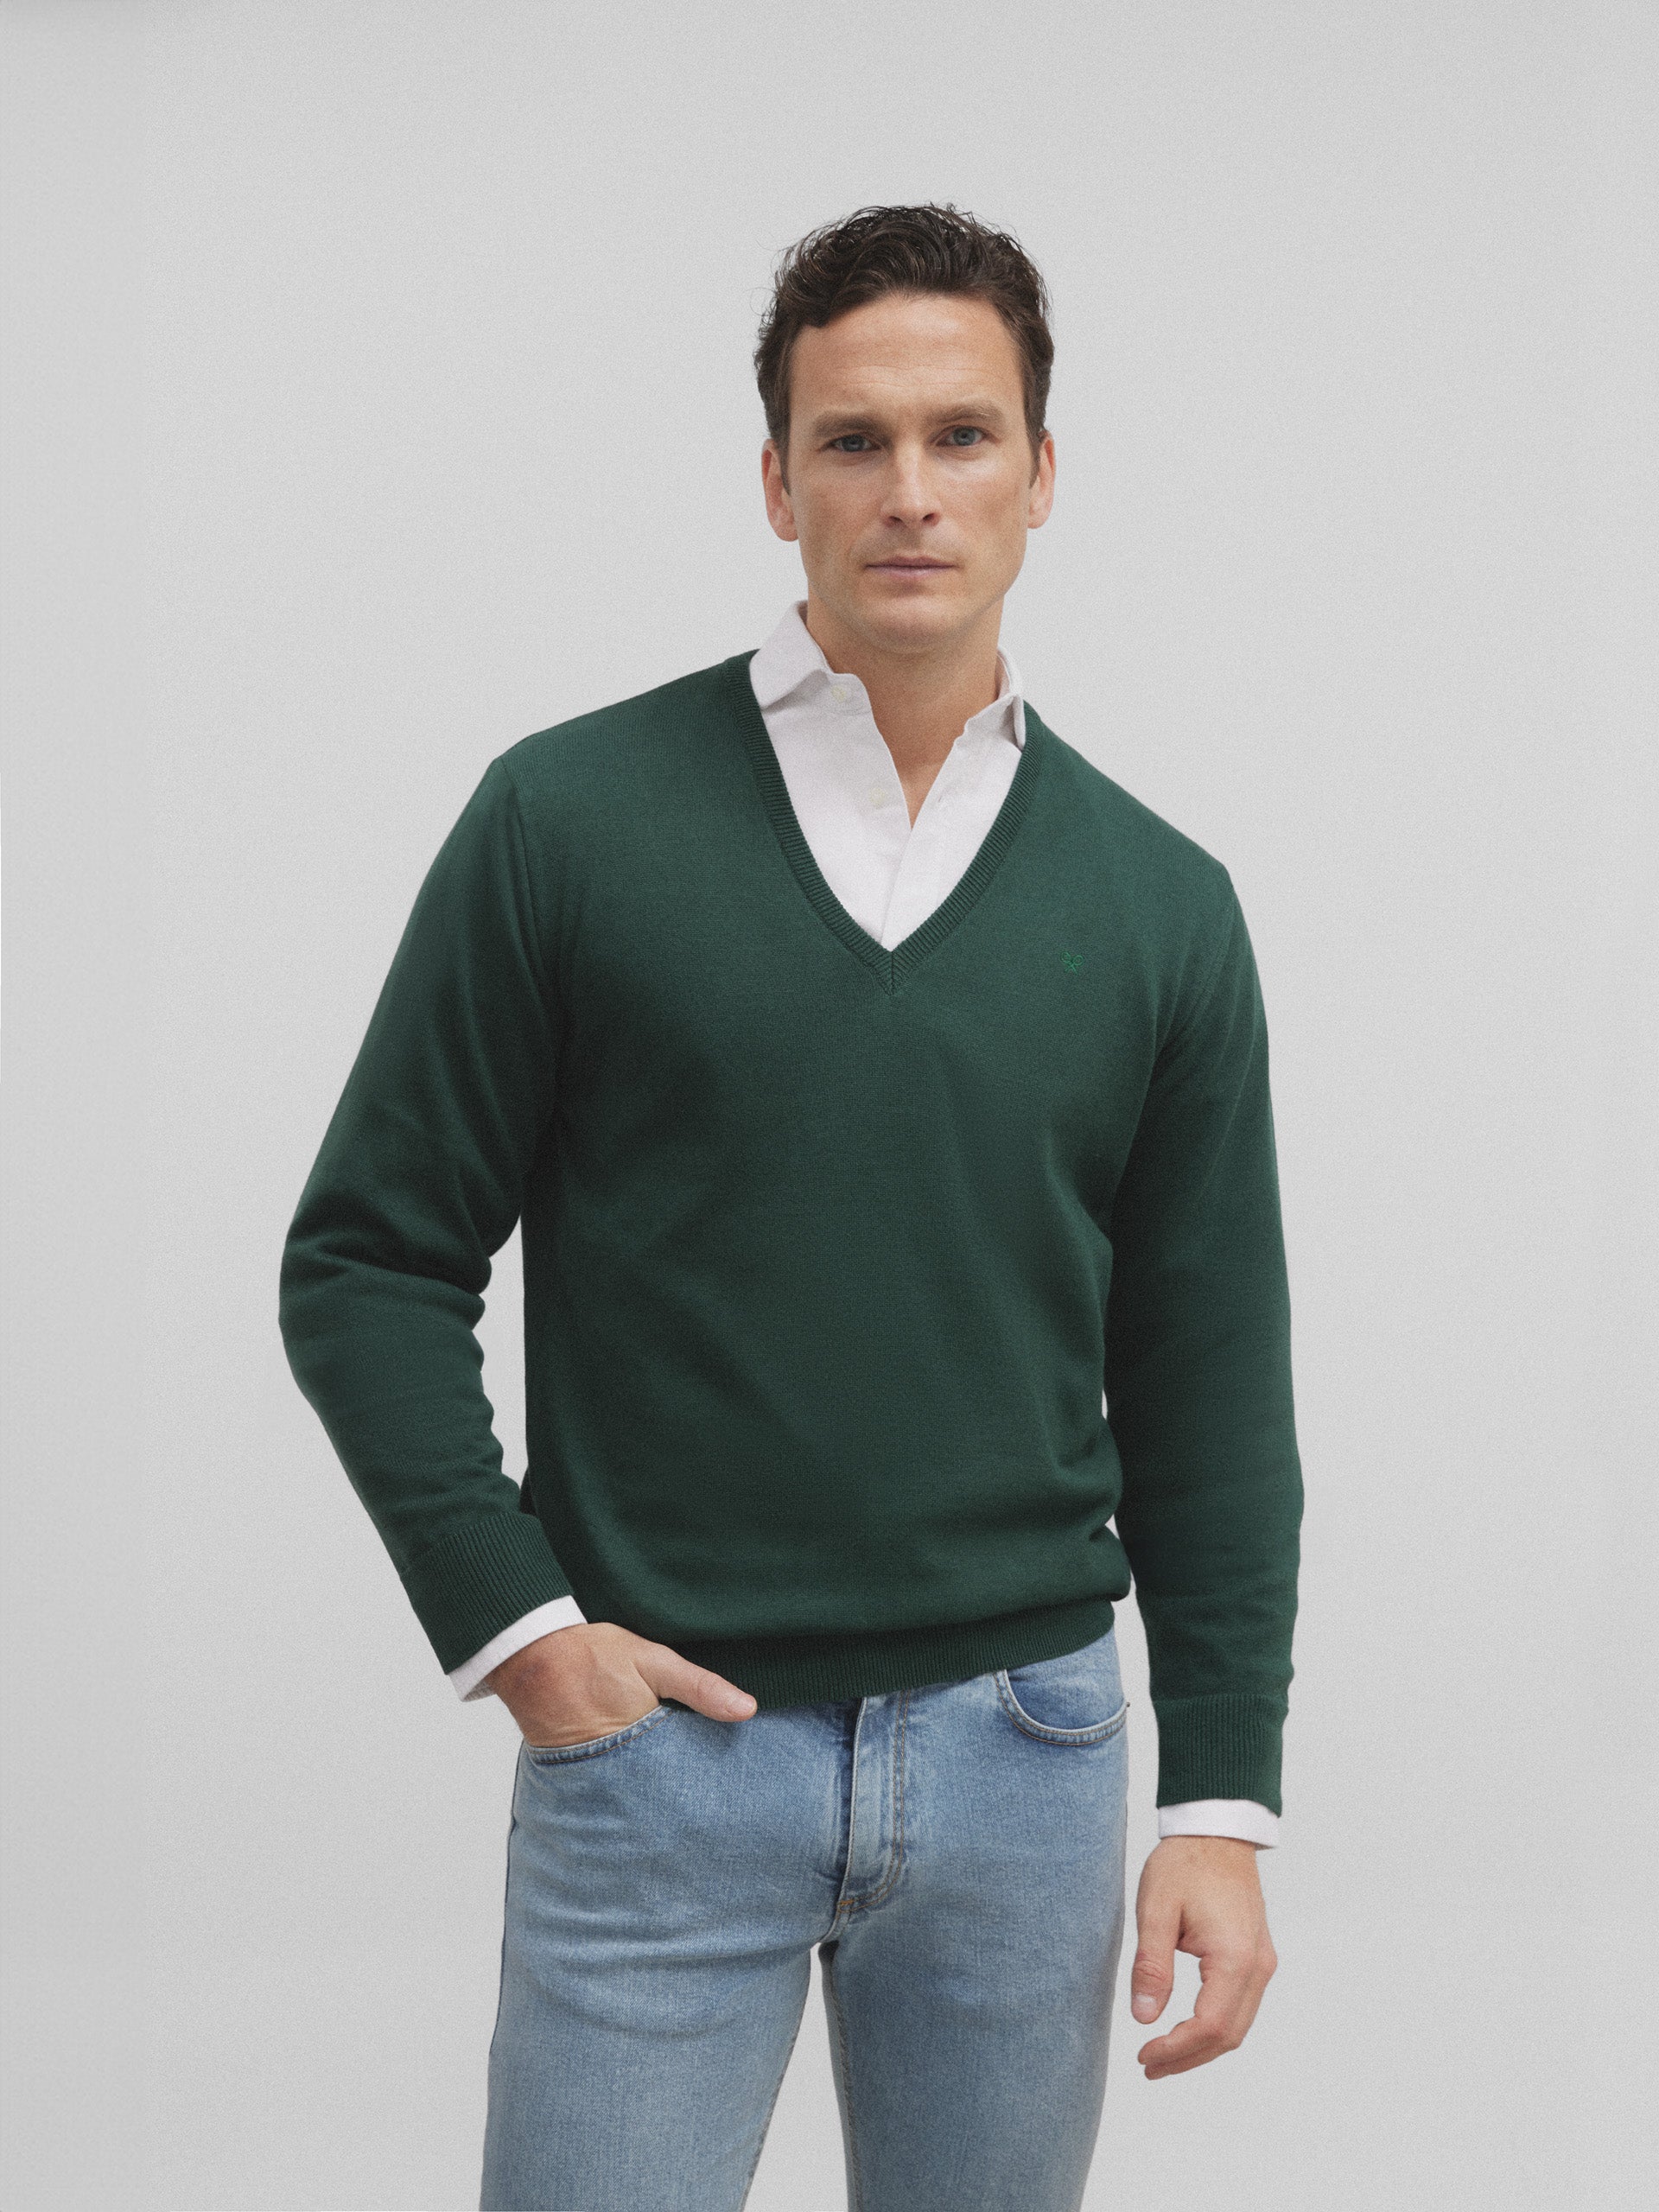 Classic green retro V-neck sweater